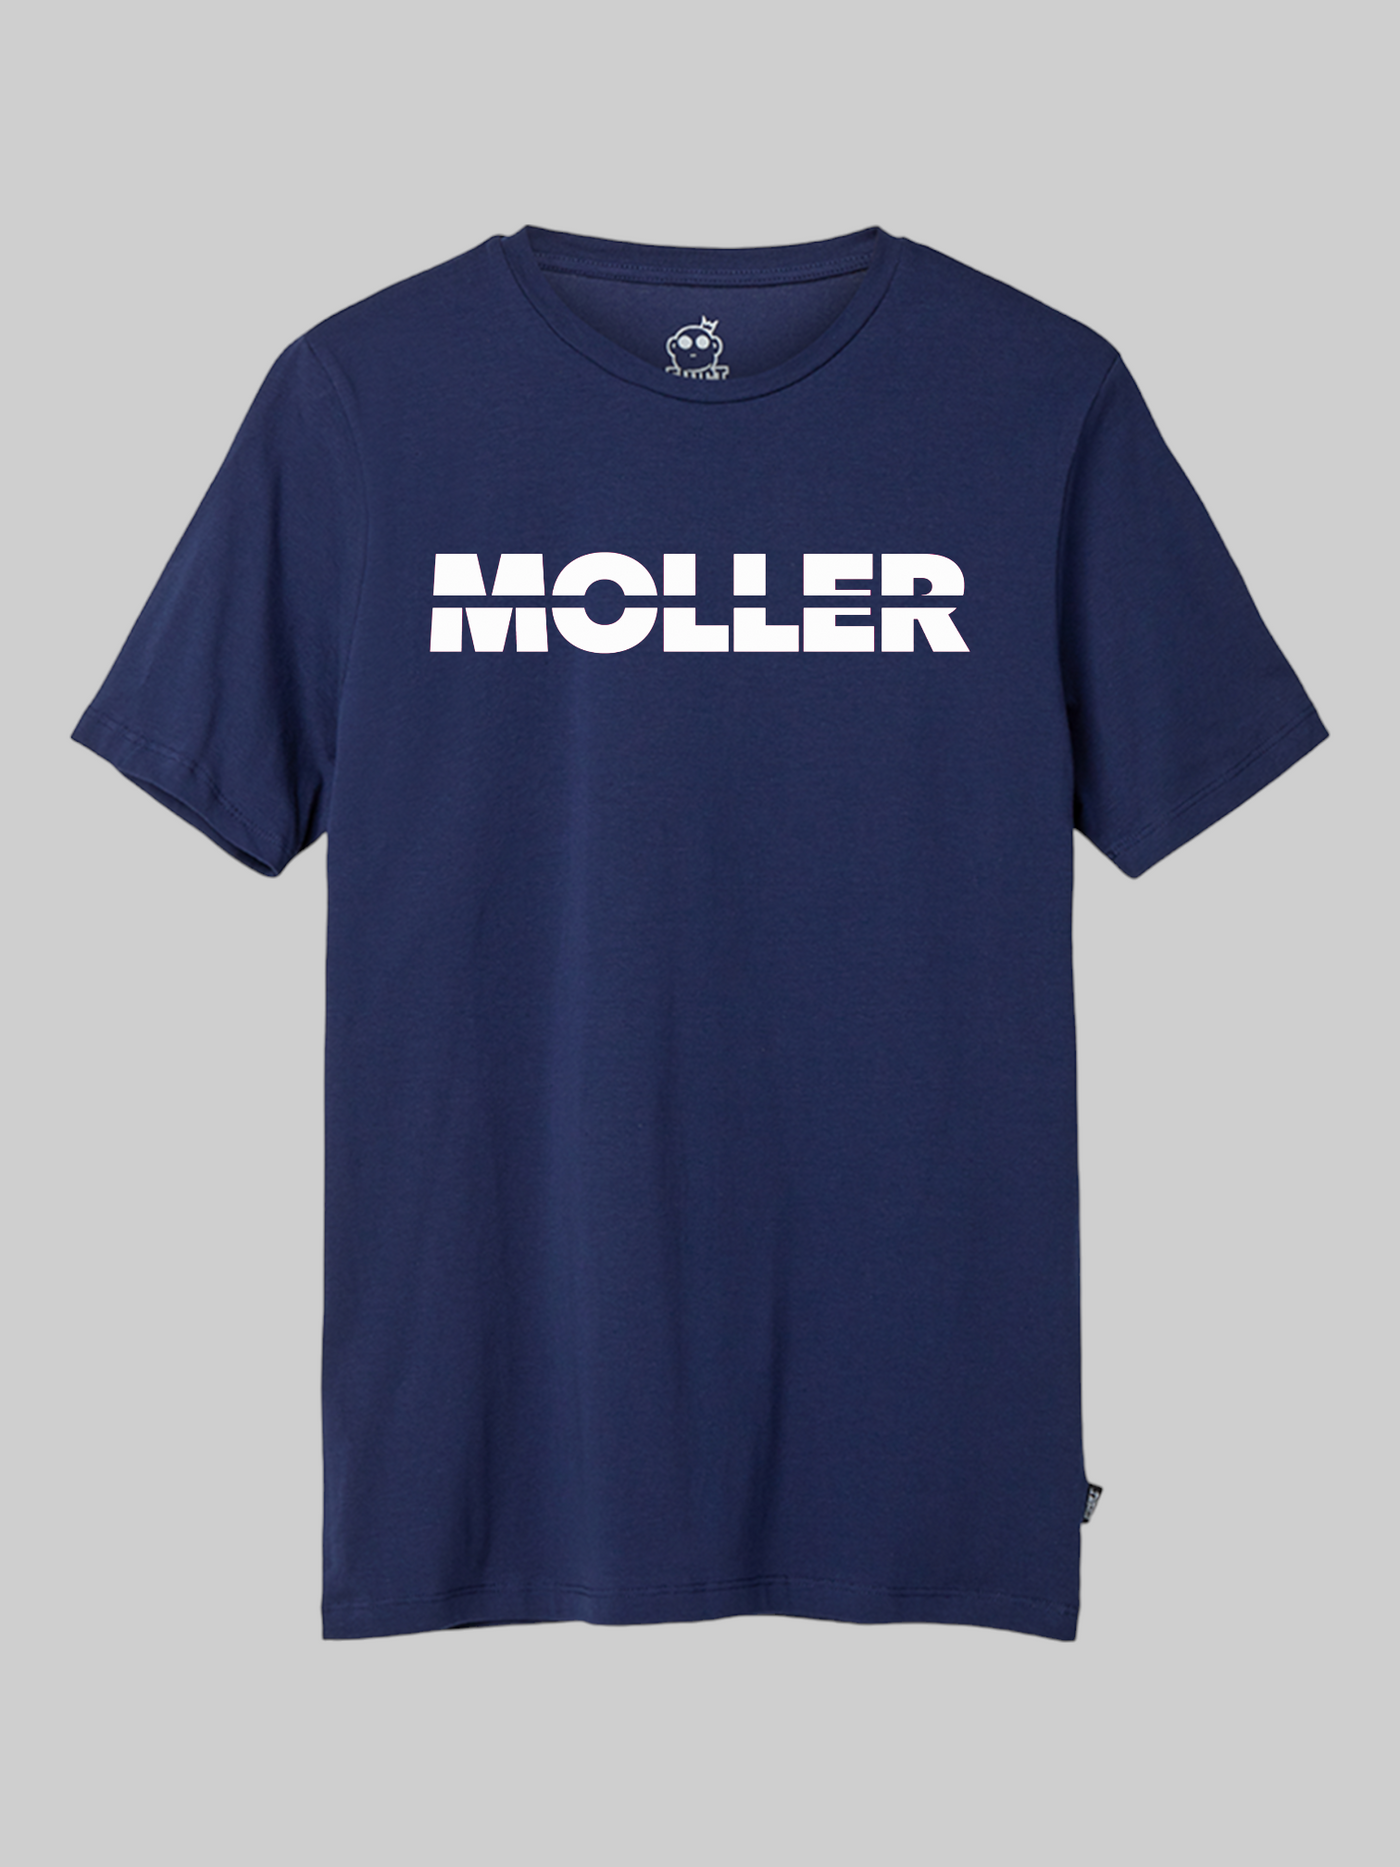 Moller - Logo T-Shirt Navy